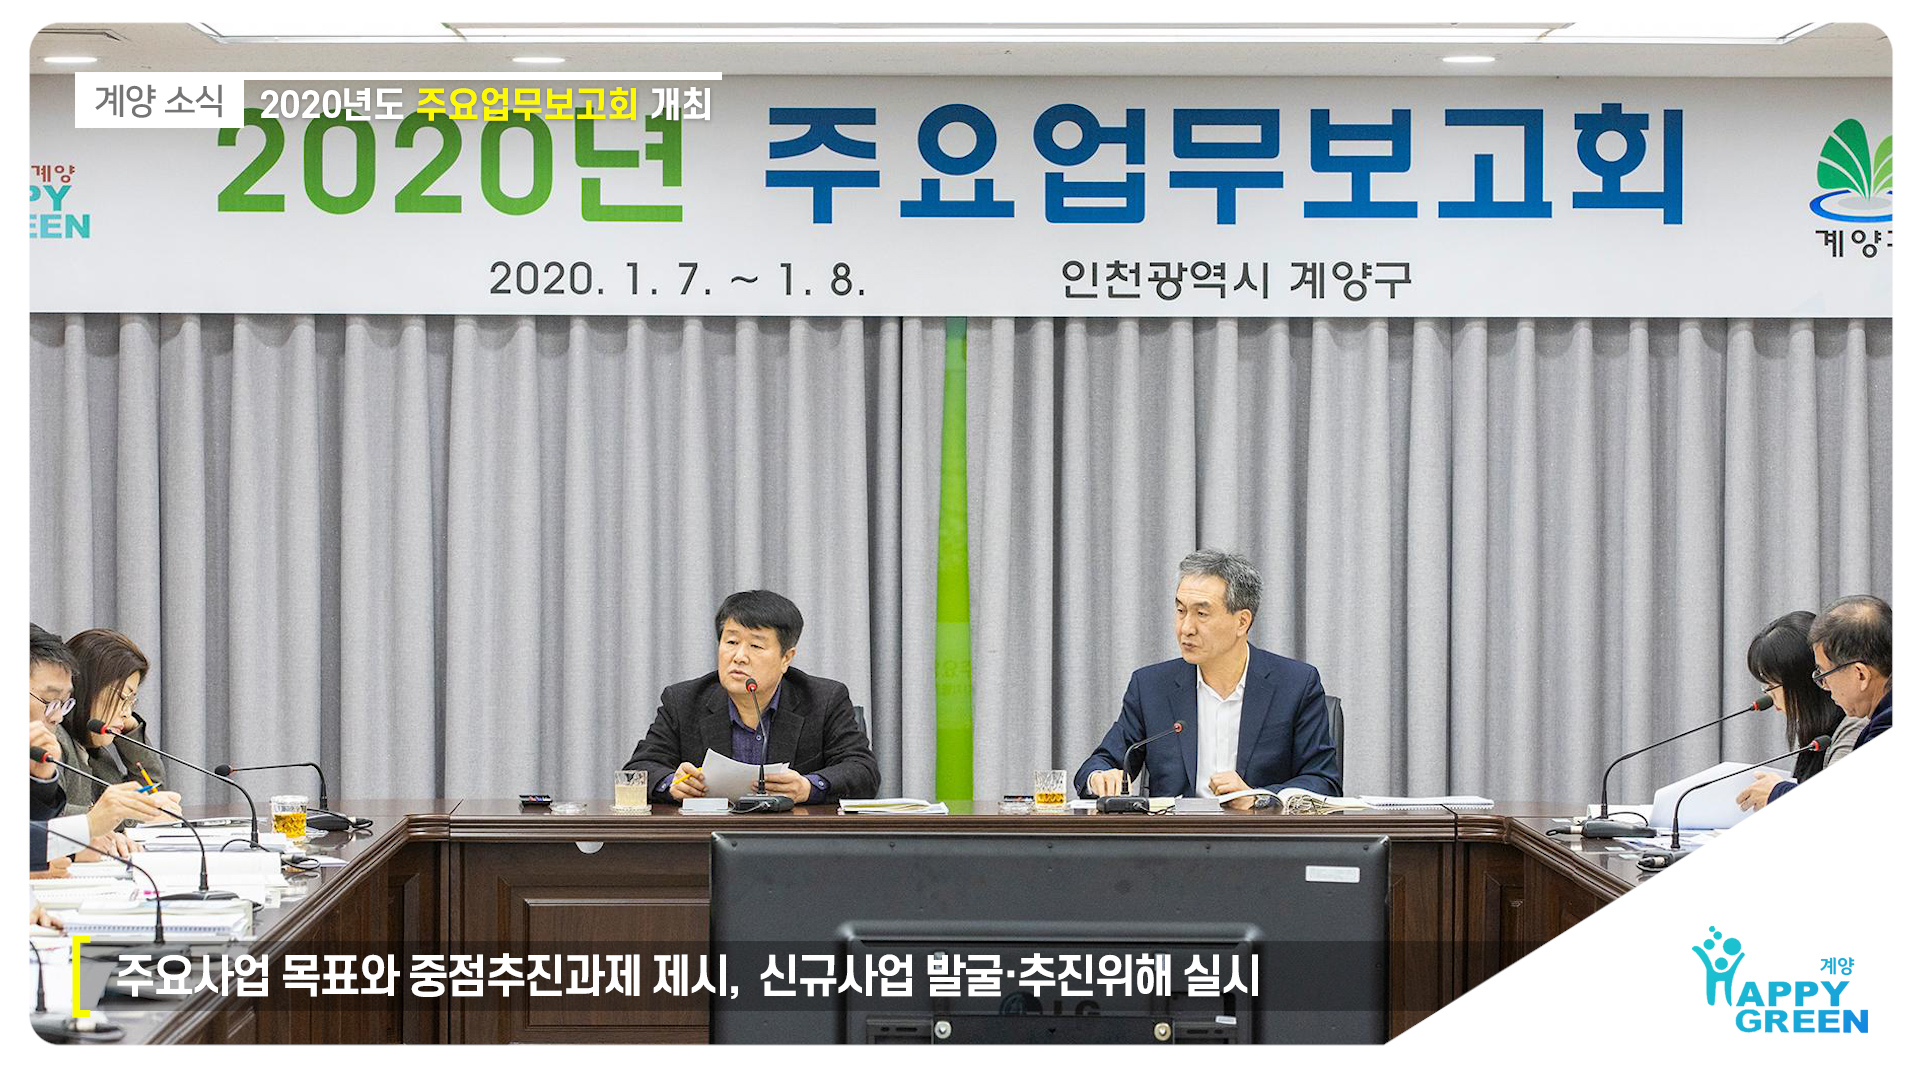 2020년도 주요업무보고회 개최_[2020.1.2주]